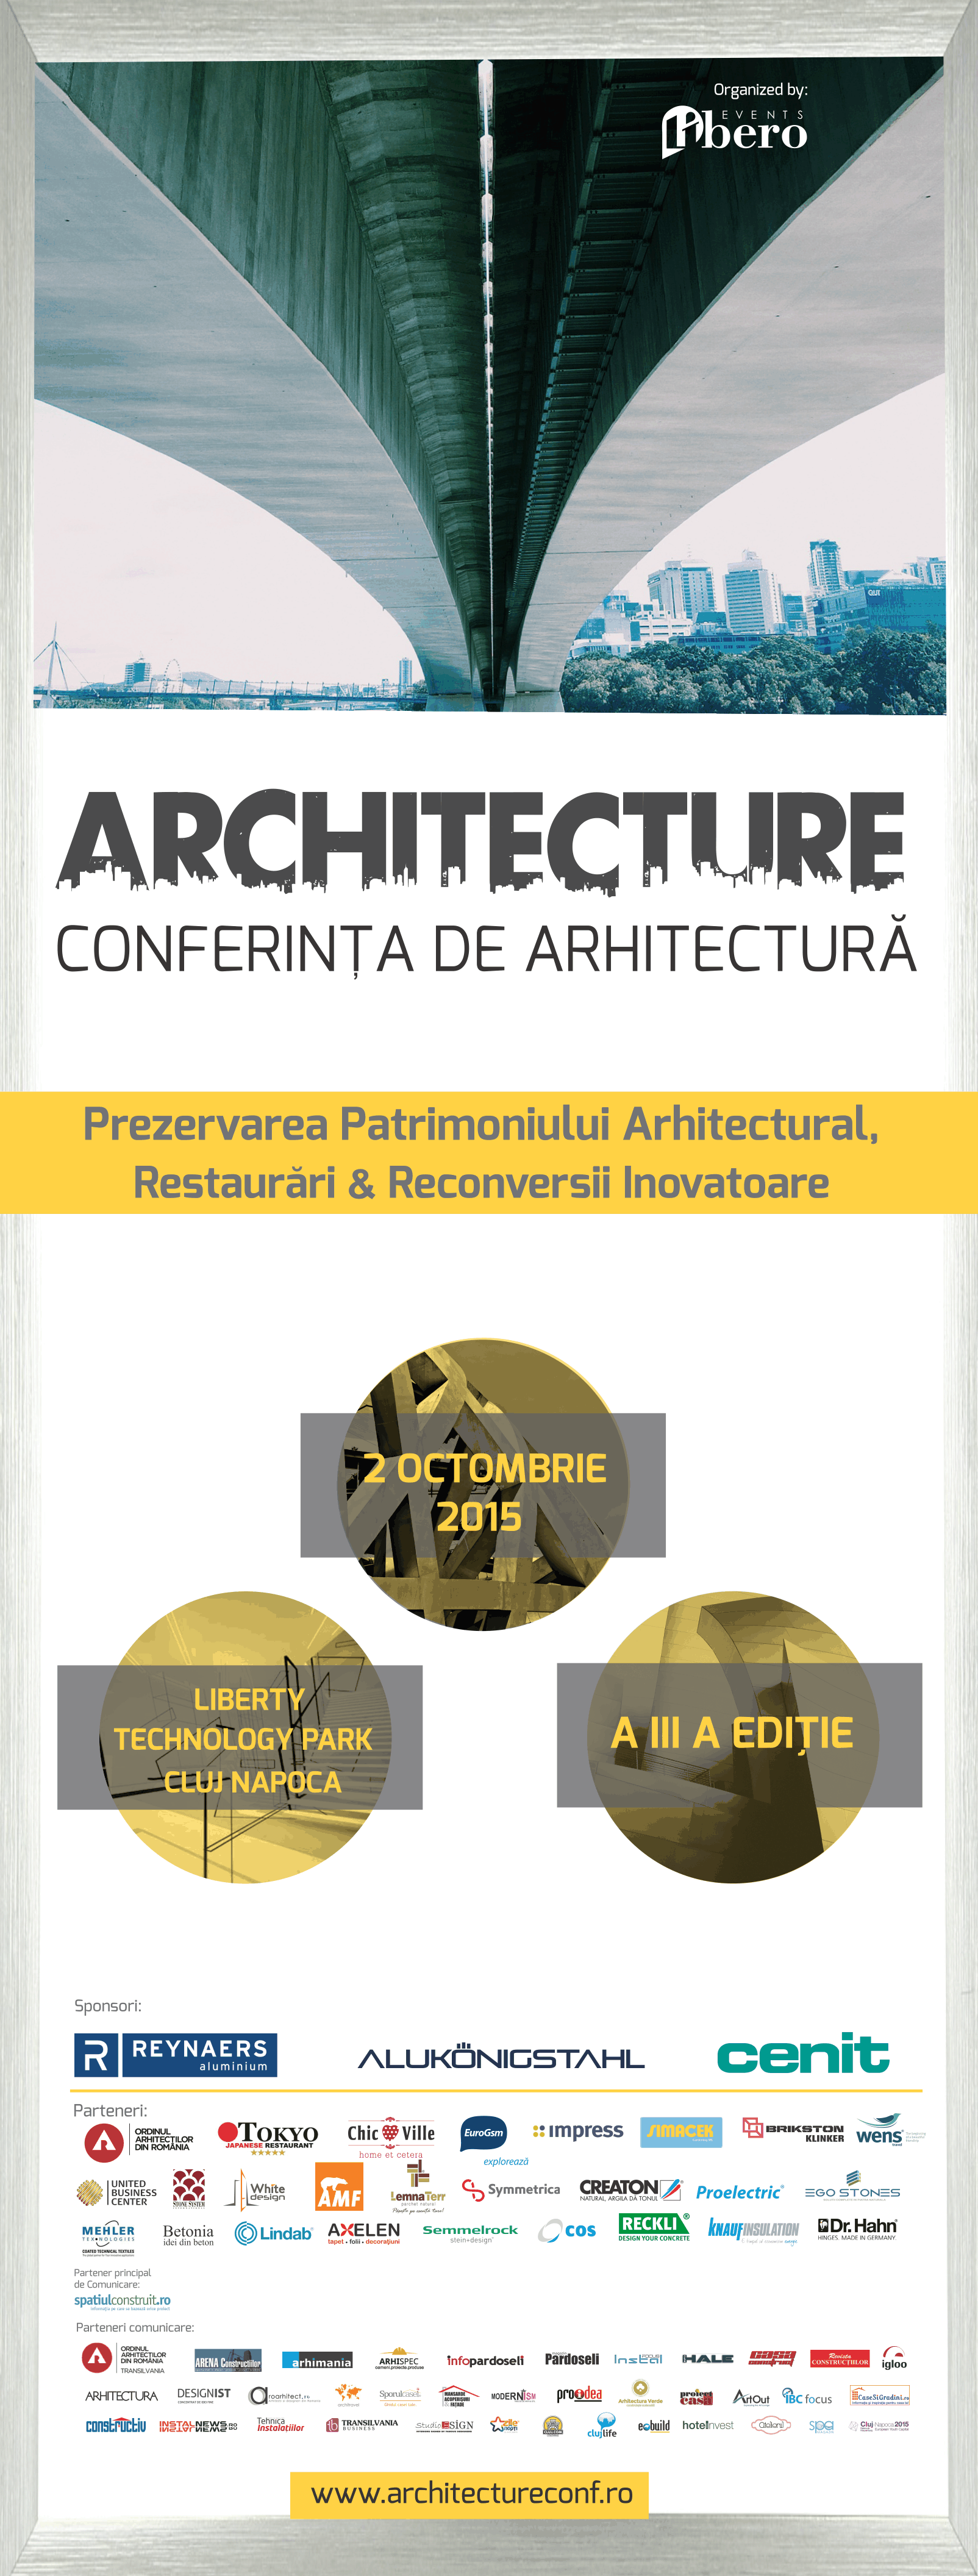 Architecture-Afis-parteneri